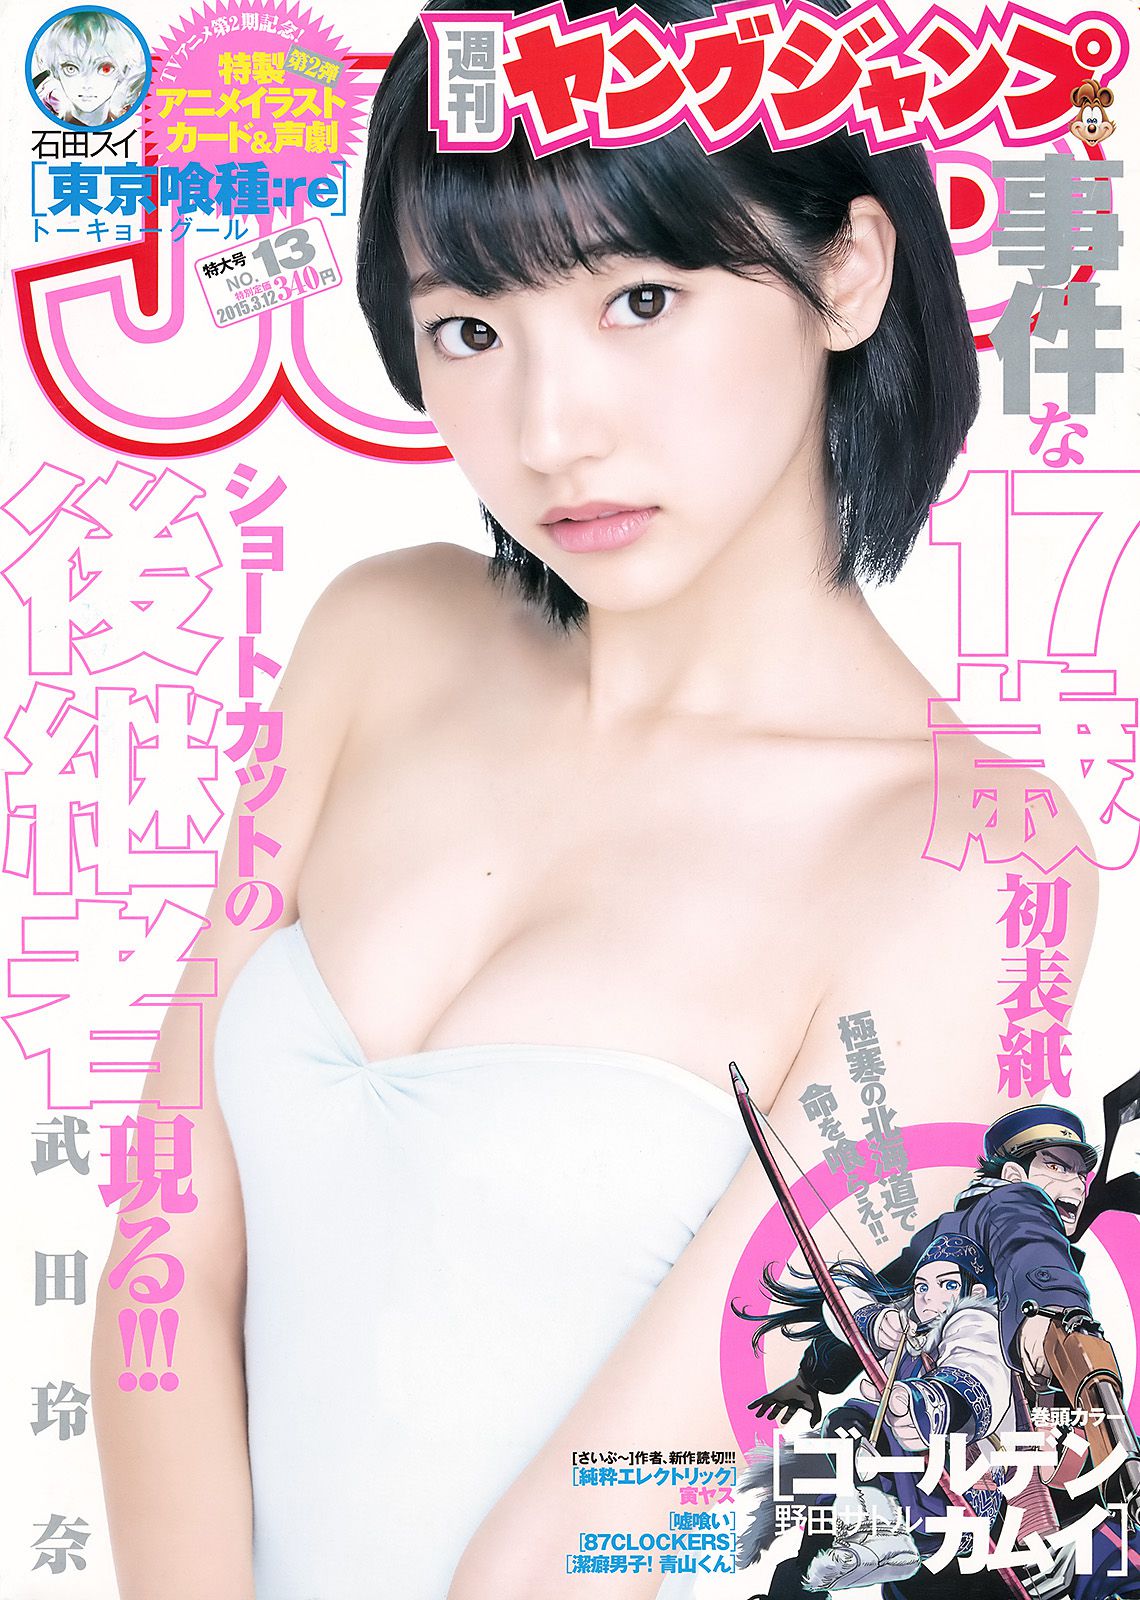 武田玲奈 山地まり [Weekly Young Jump] 2015年No.13 写真杂志1